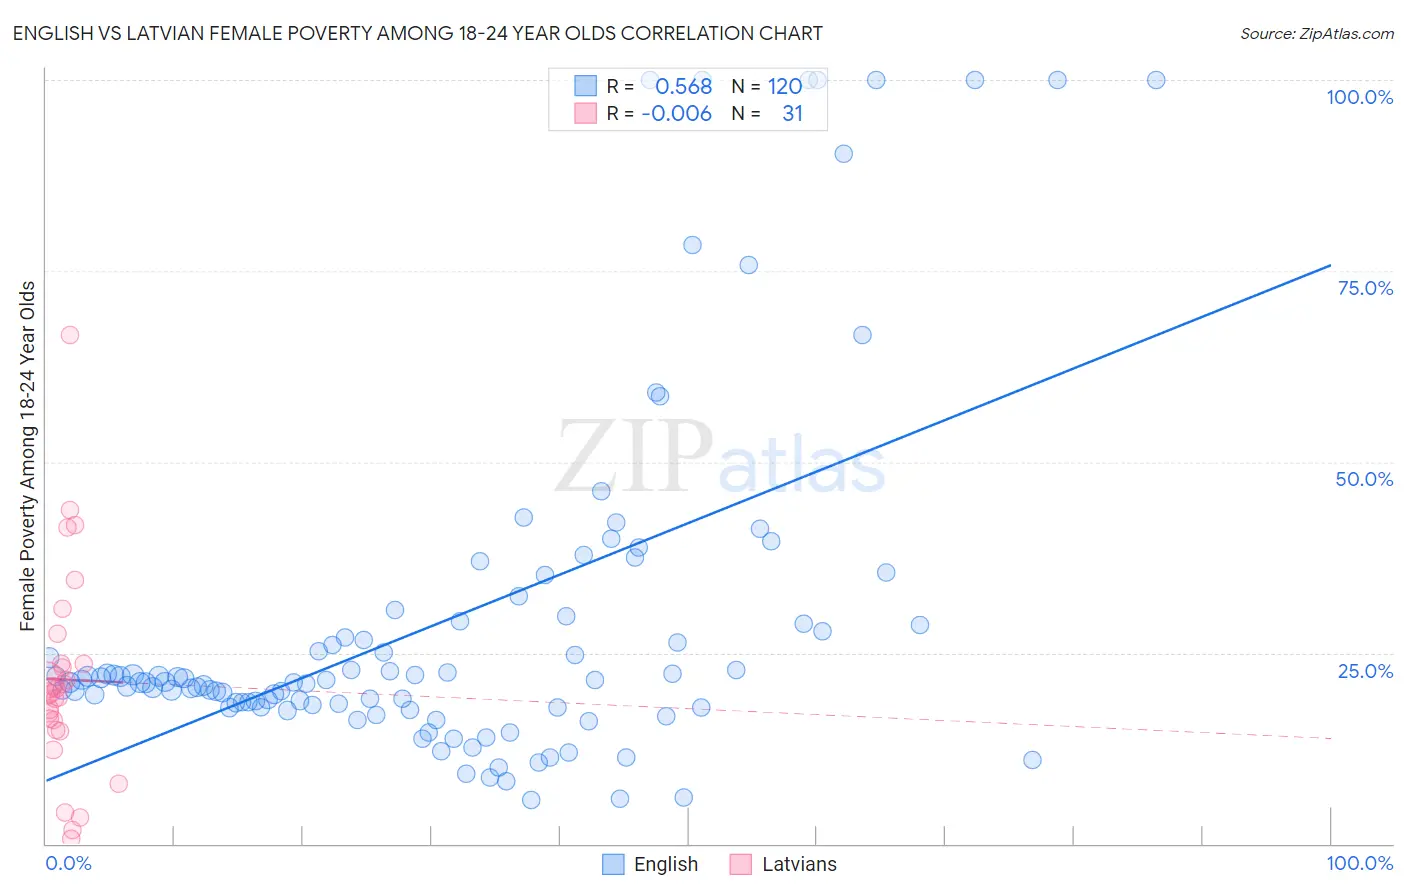 English vs Latvian Female Poverty Among 18-24 Year Olds